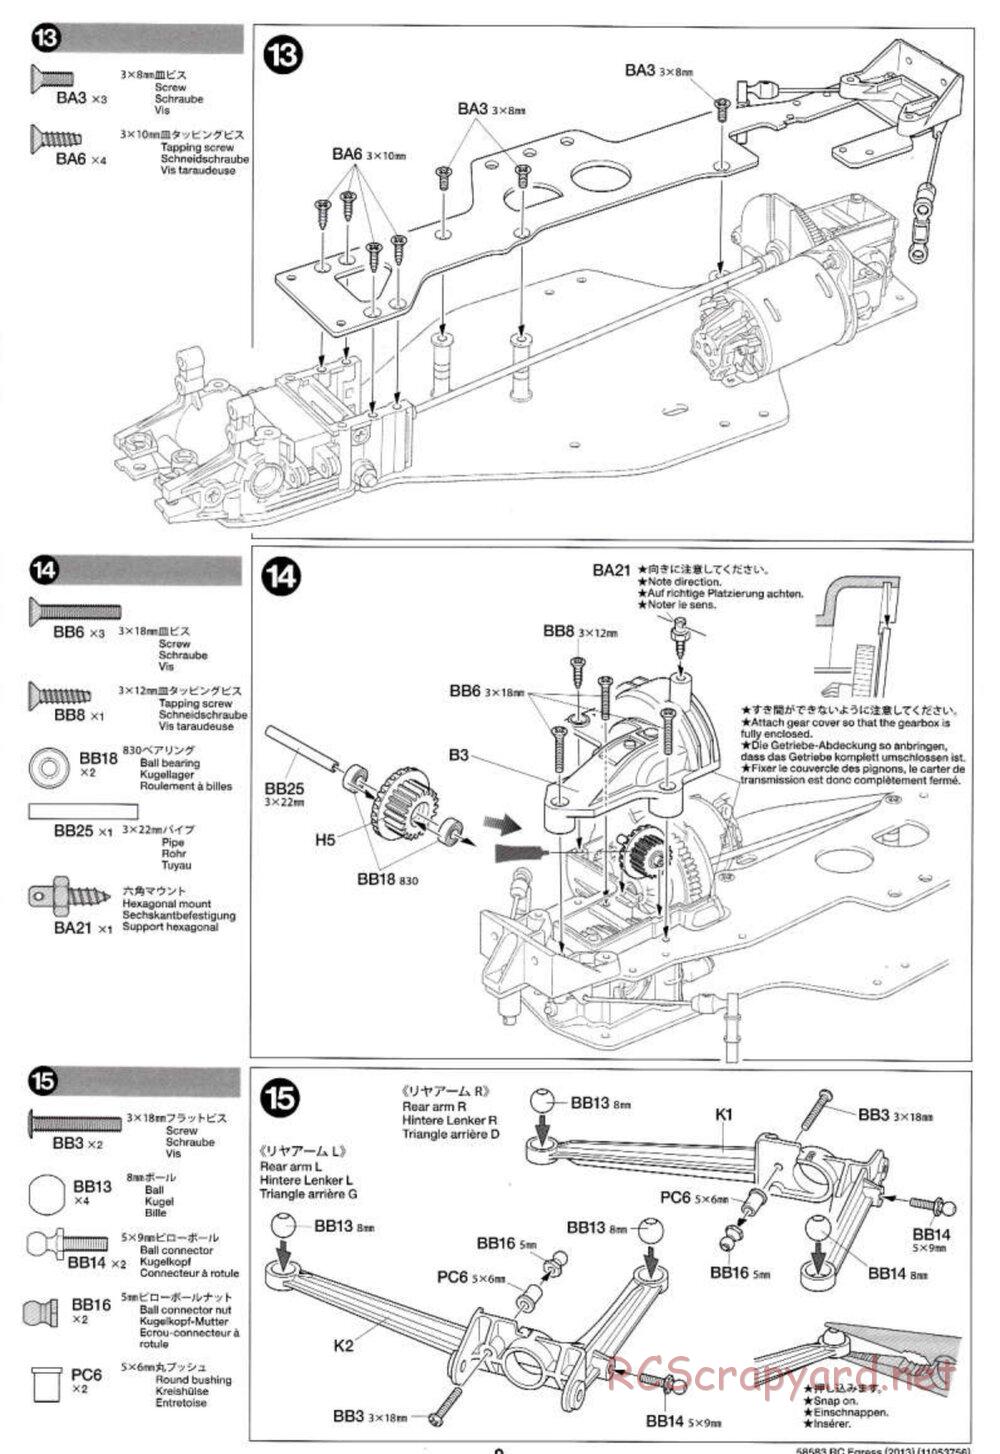 Tamiya - Egress 2013 - AV Chassis - Manual - Page 9